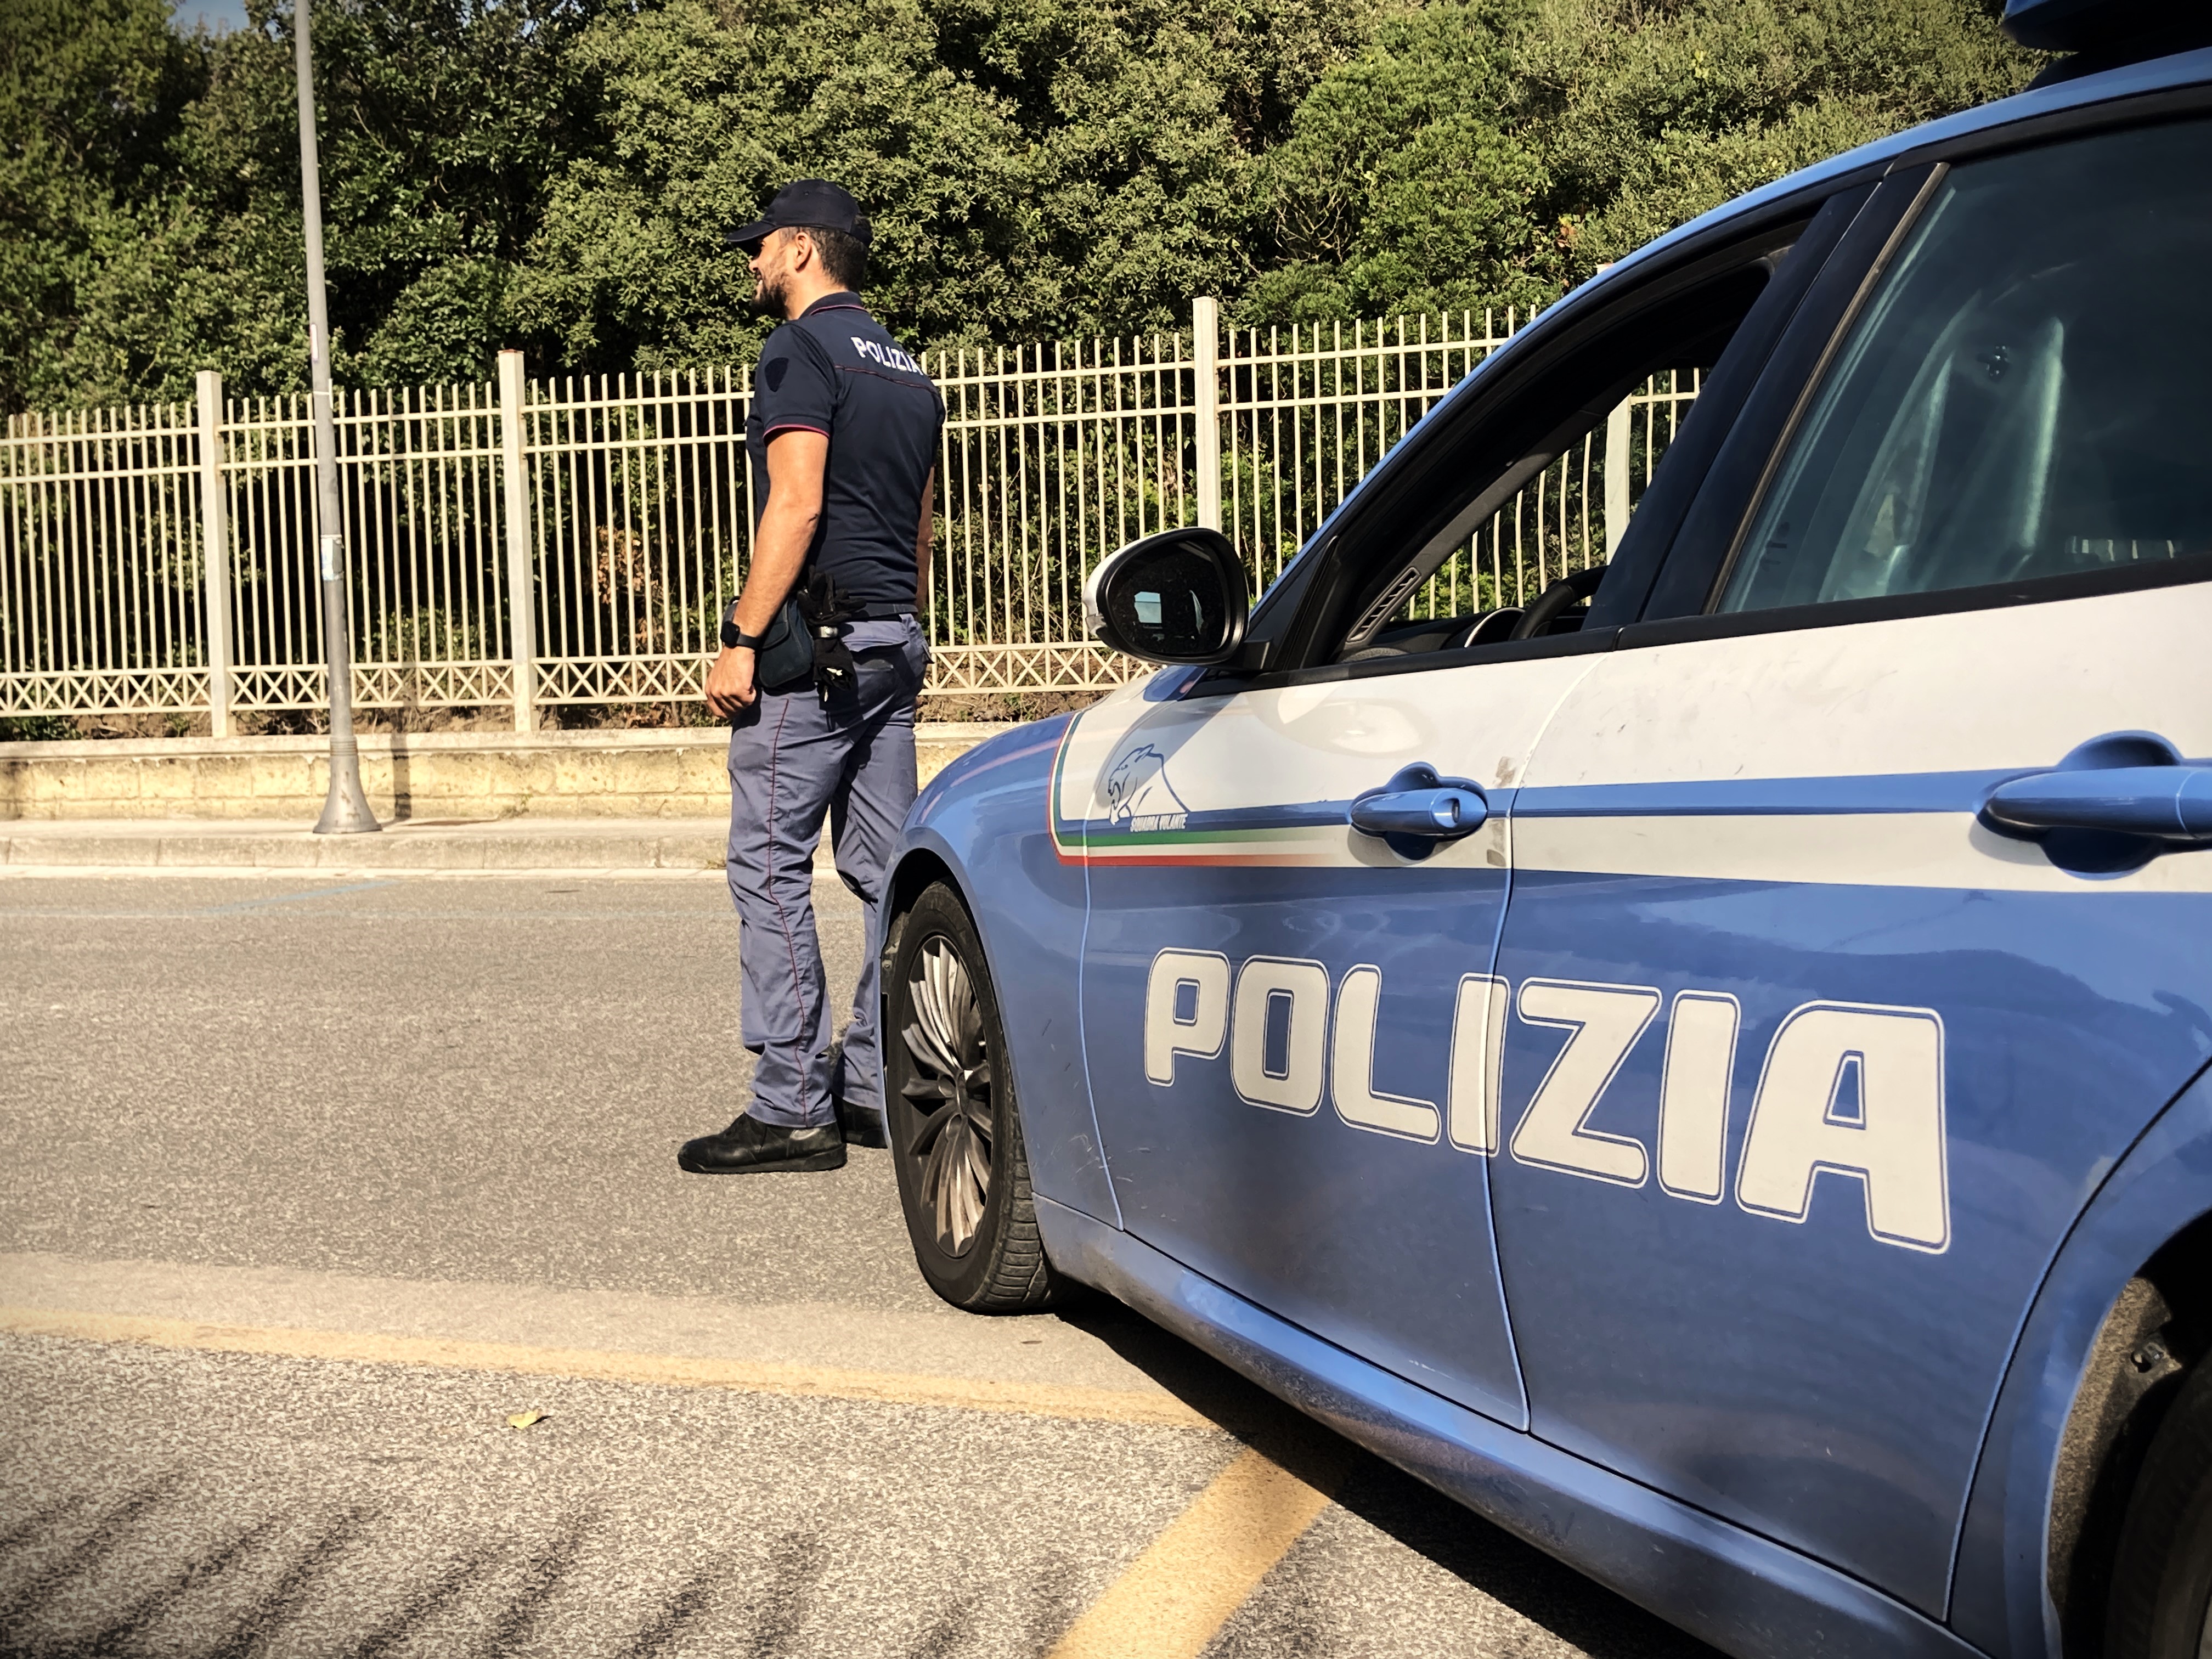 Rientra in Italia dopo essere stato espulso, arrestato a Castel Volturno dalla Polizia di Stato.